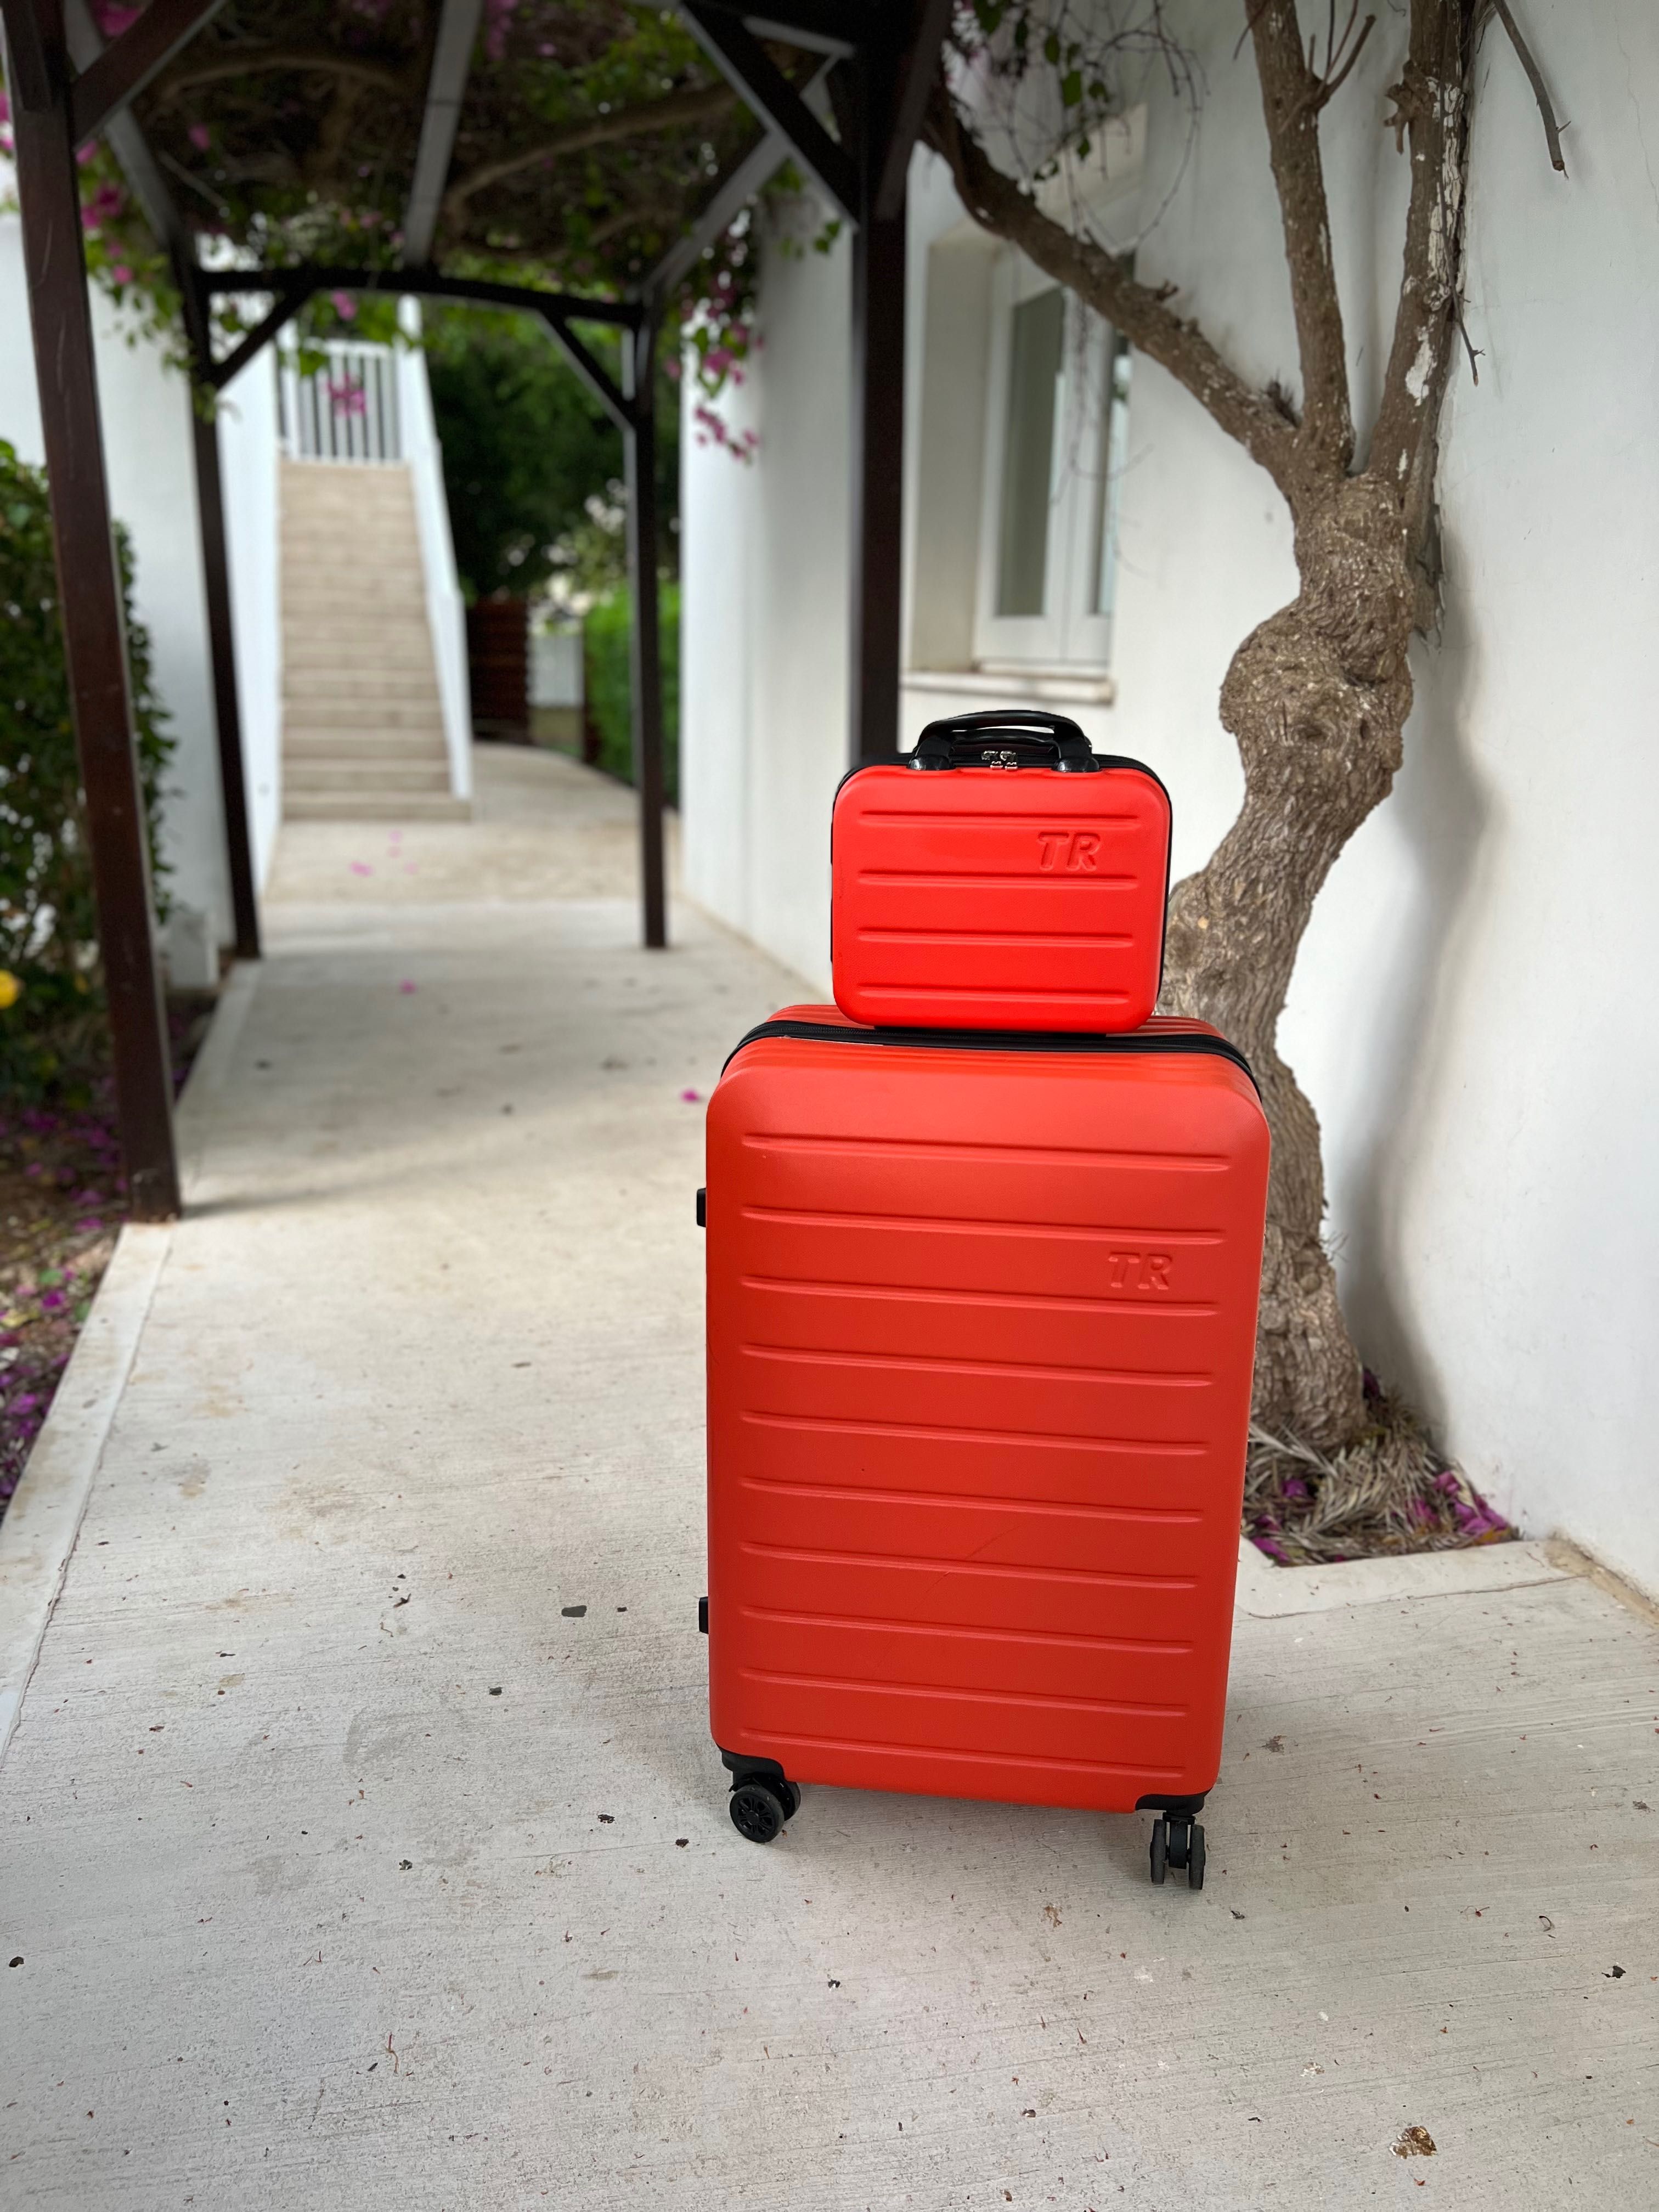 Удороустойчив голям куфар в различни цветове и размери | C разширение.